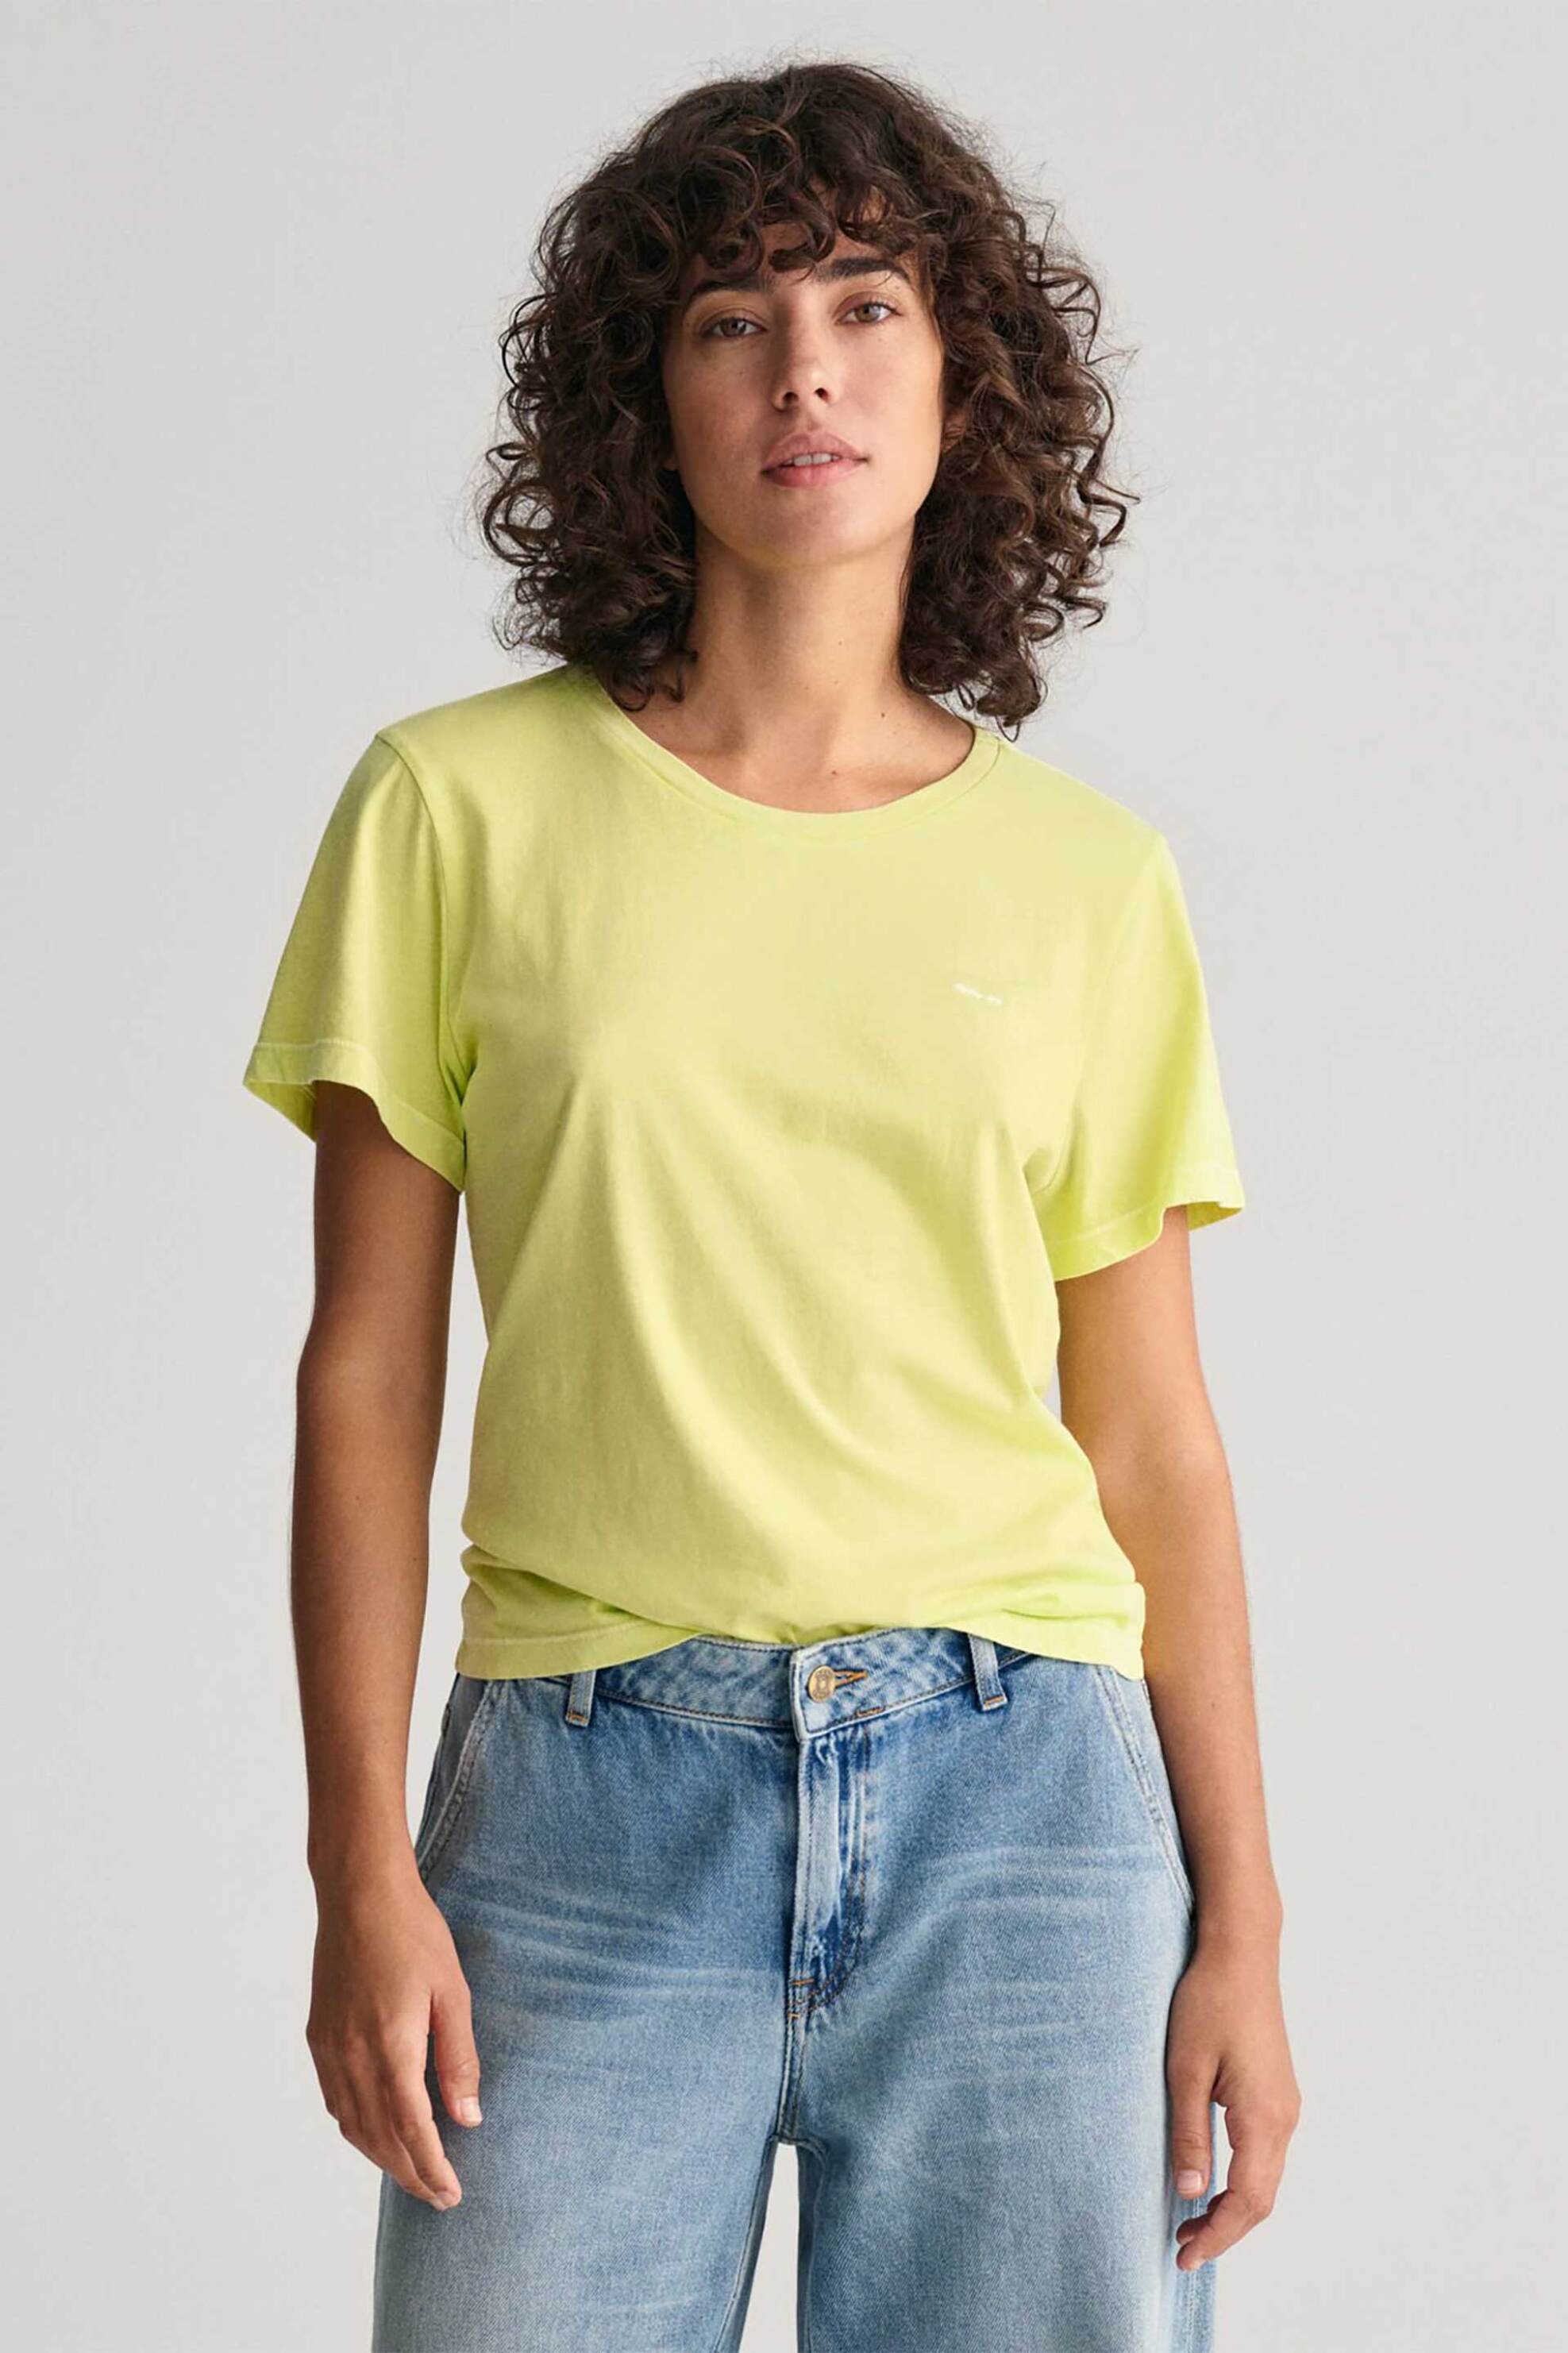 Γυναικεία Ρούχα & Αξεσουάρ > Γυναικεία Ρούχα > Γυναικεία Τοπ > Γυναικεία T-Shirts Gant γυναικείο T-shirt με λογότυπο Regular Fit - 4200868 Κίτρινο